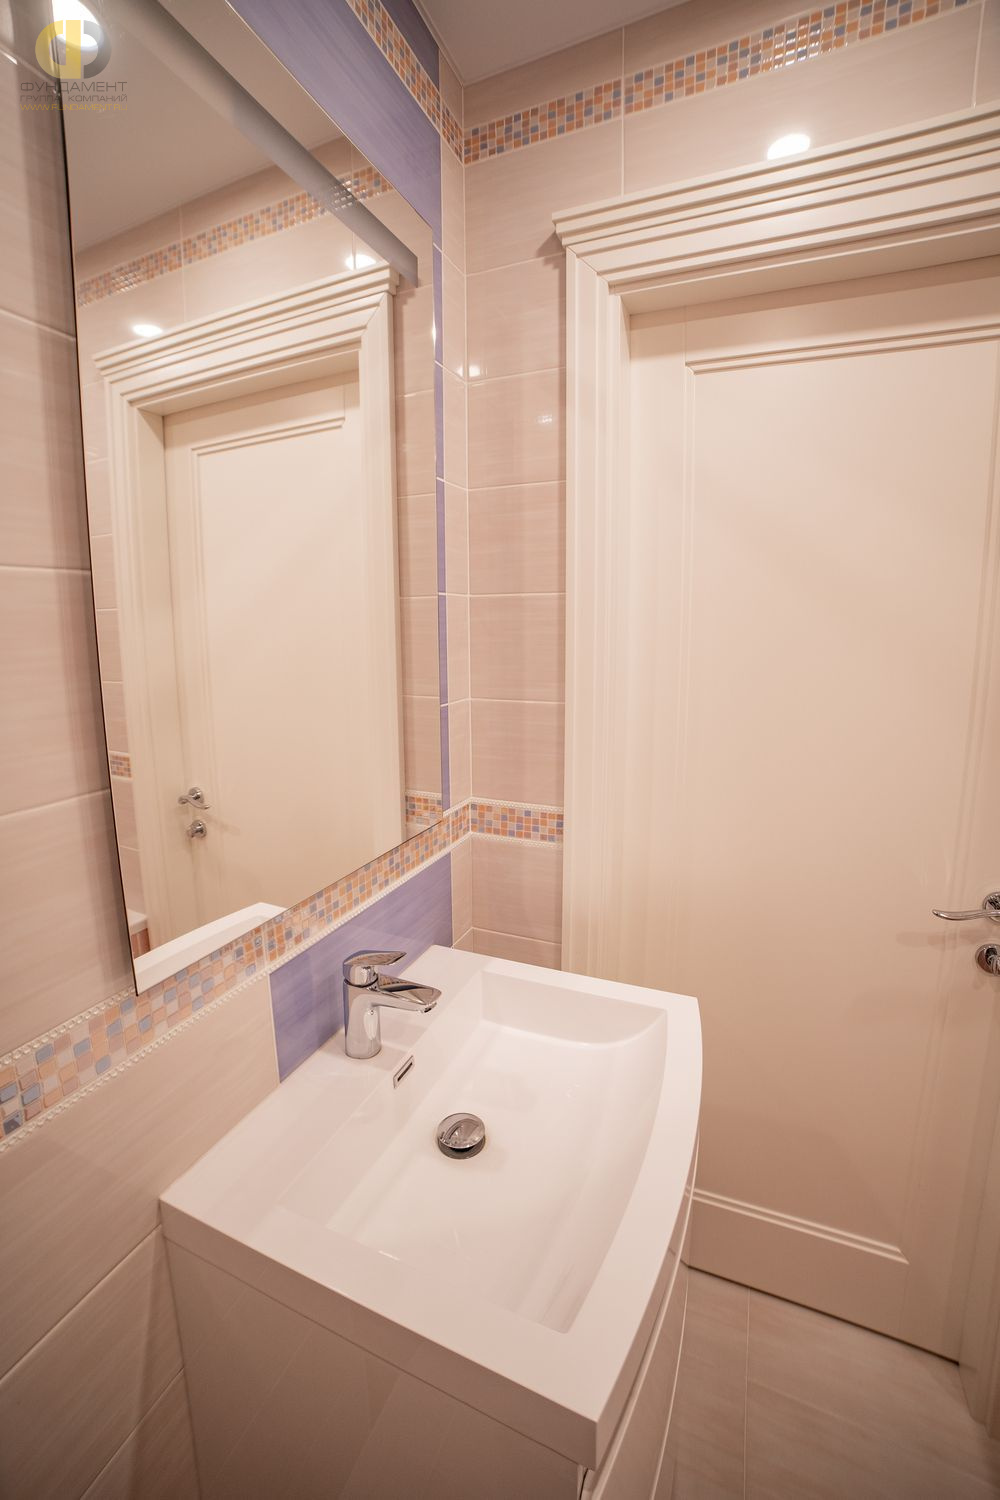 Фото ремонта ванной в четырёхкомнатной квартире 126 кв.м в стиле неоклассика – фото 99